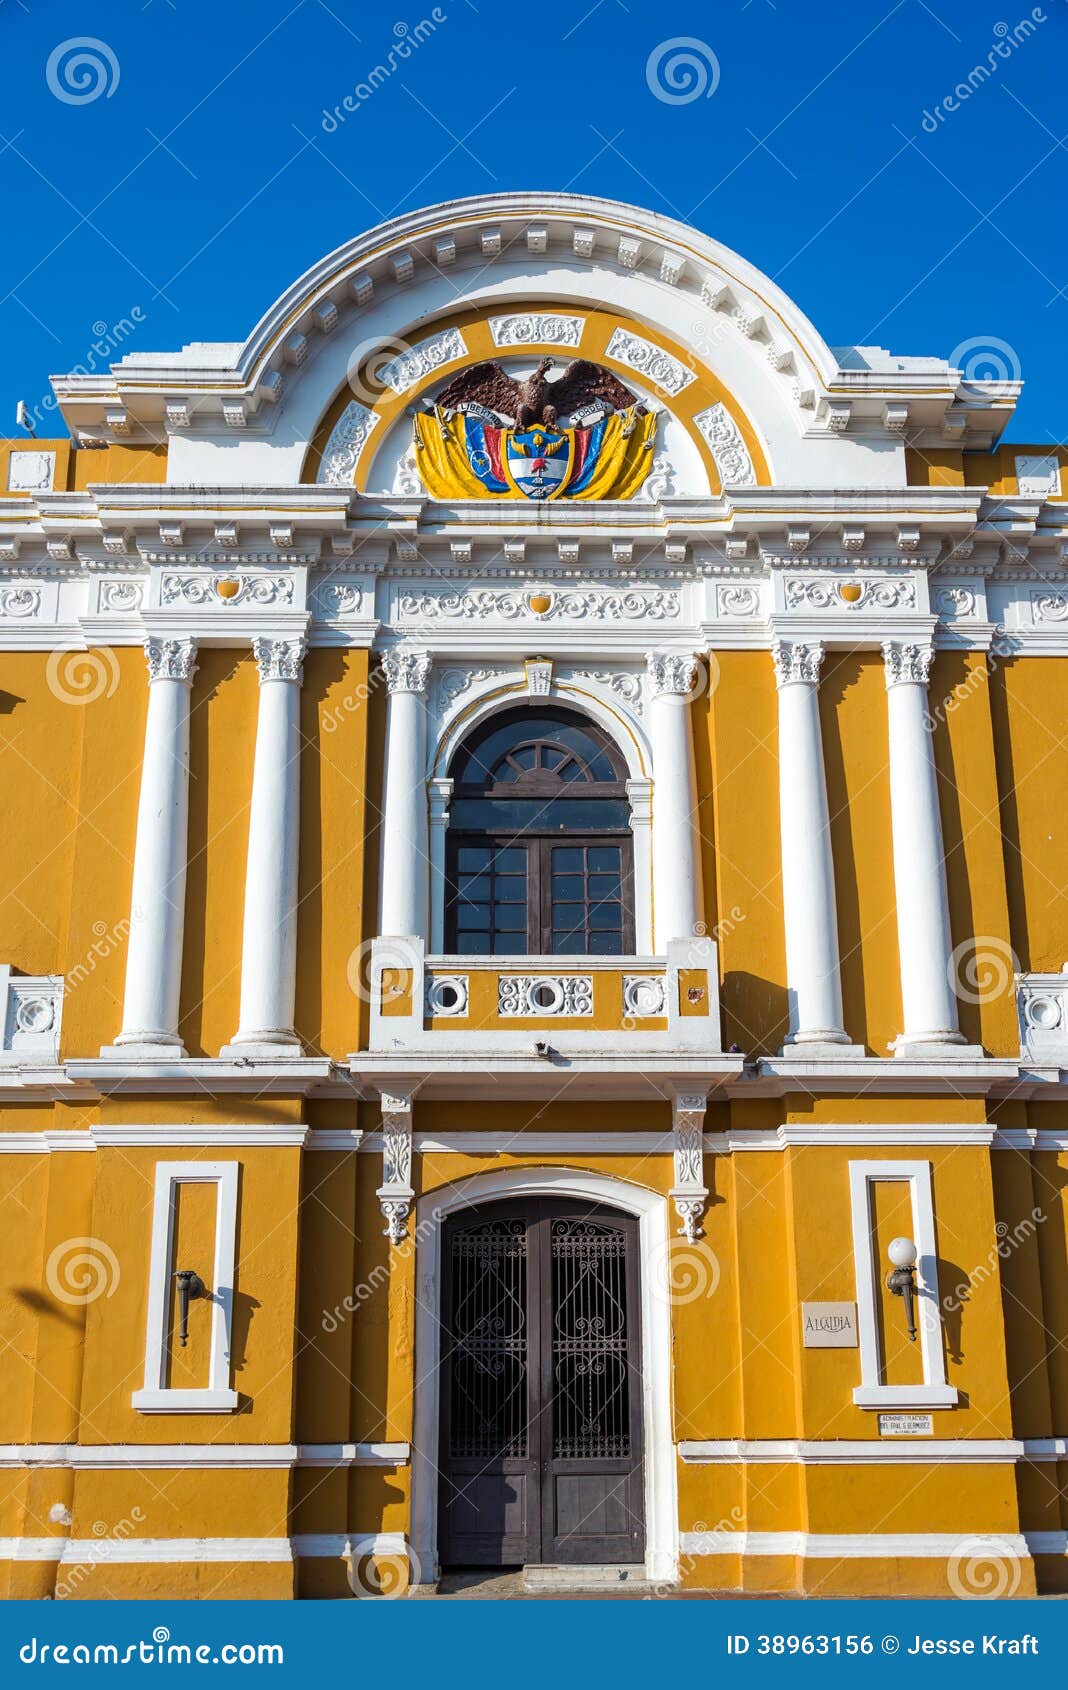 city hall of santa marta